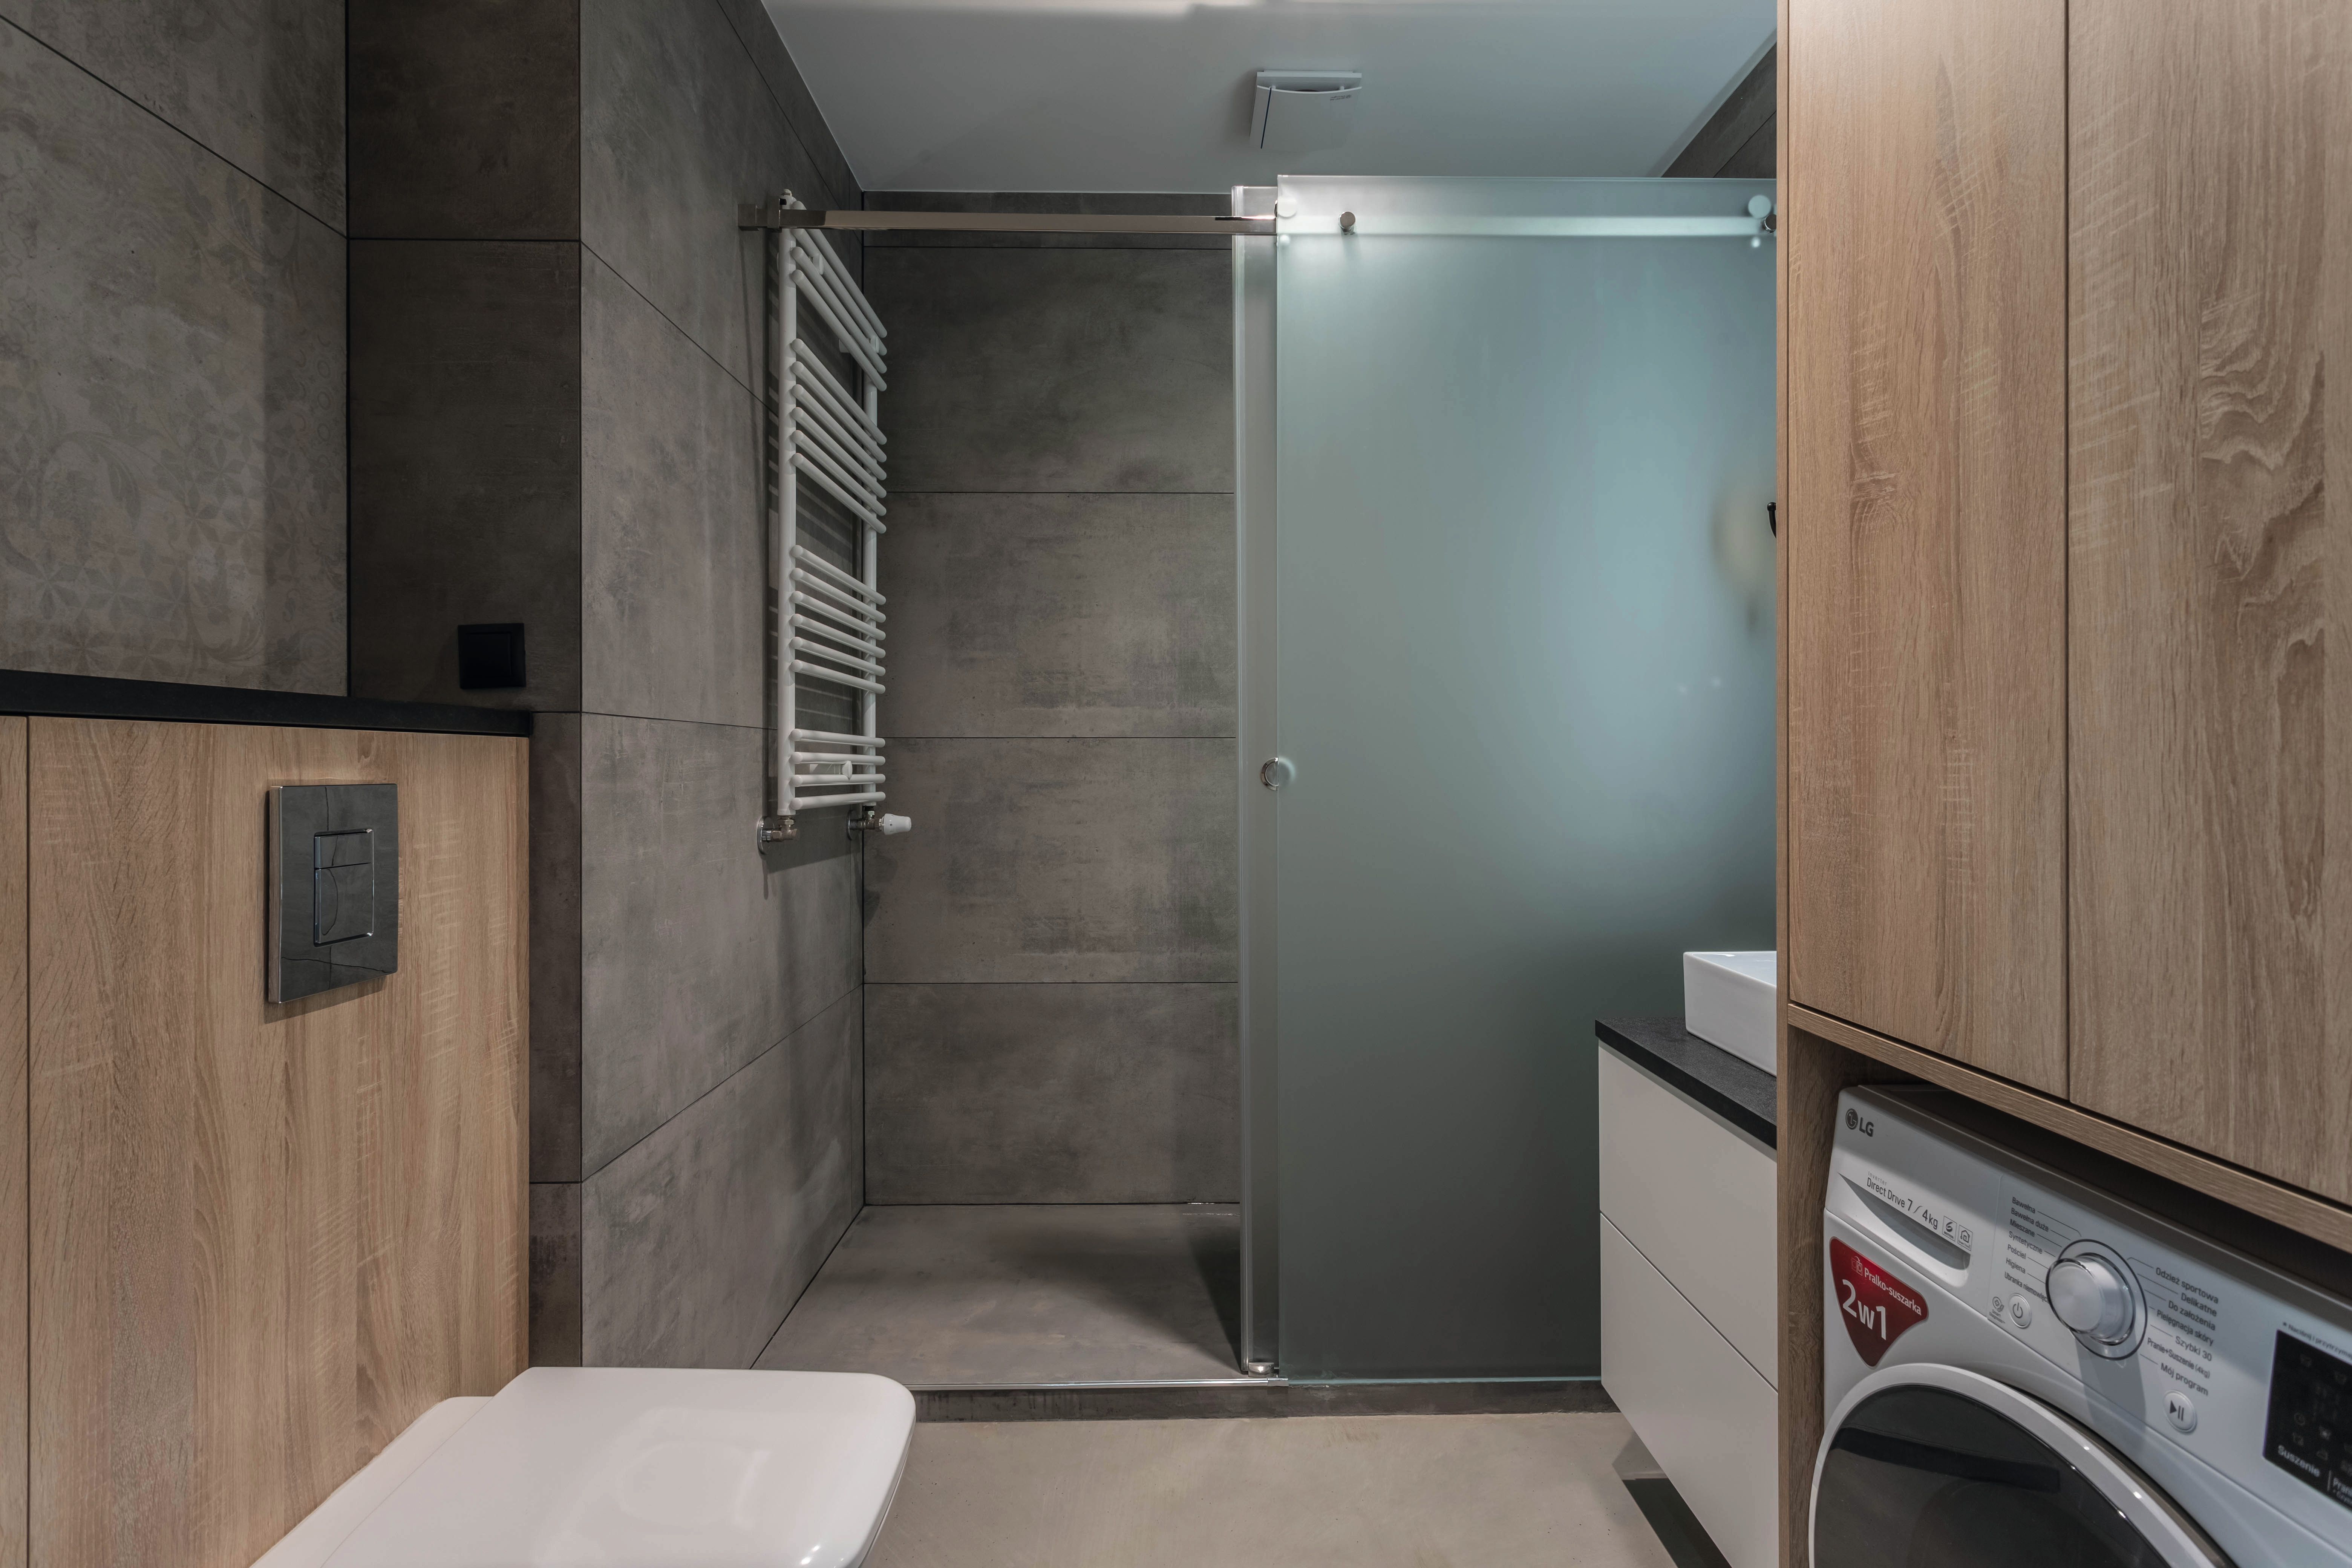 El cuarto de baño, con sus formas libres de adornos, es naturalidad acogedora en estado puro.